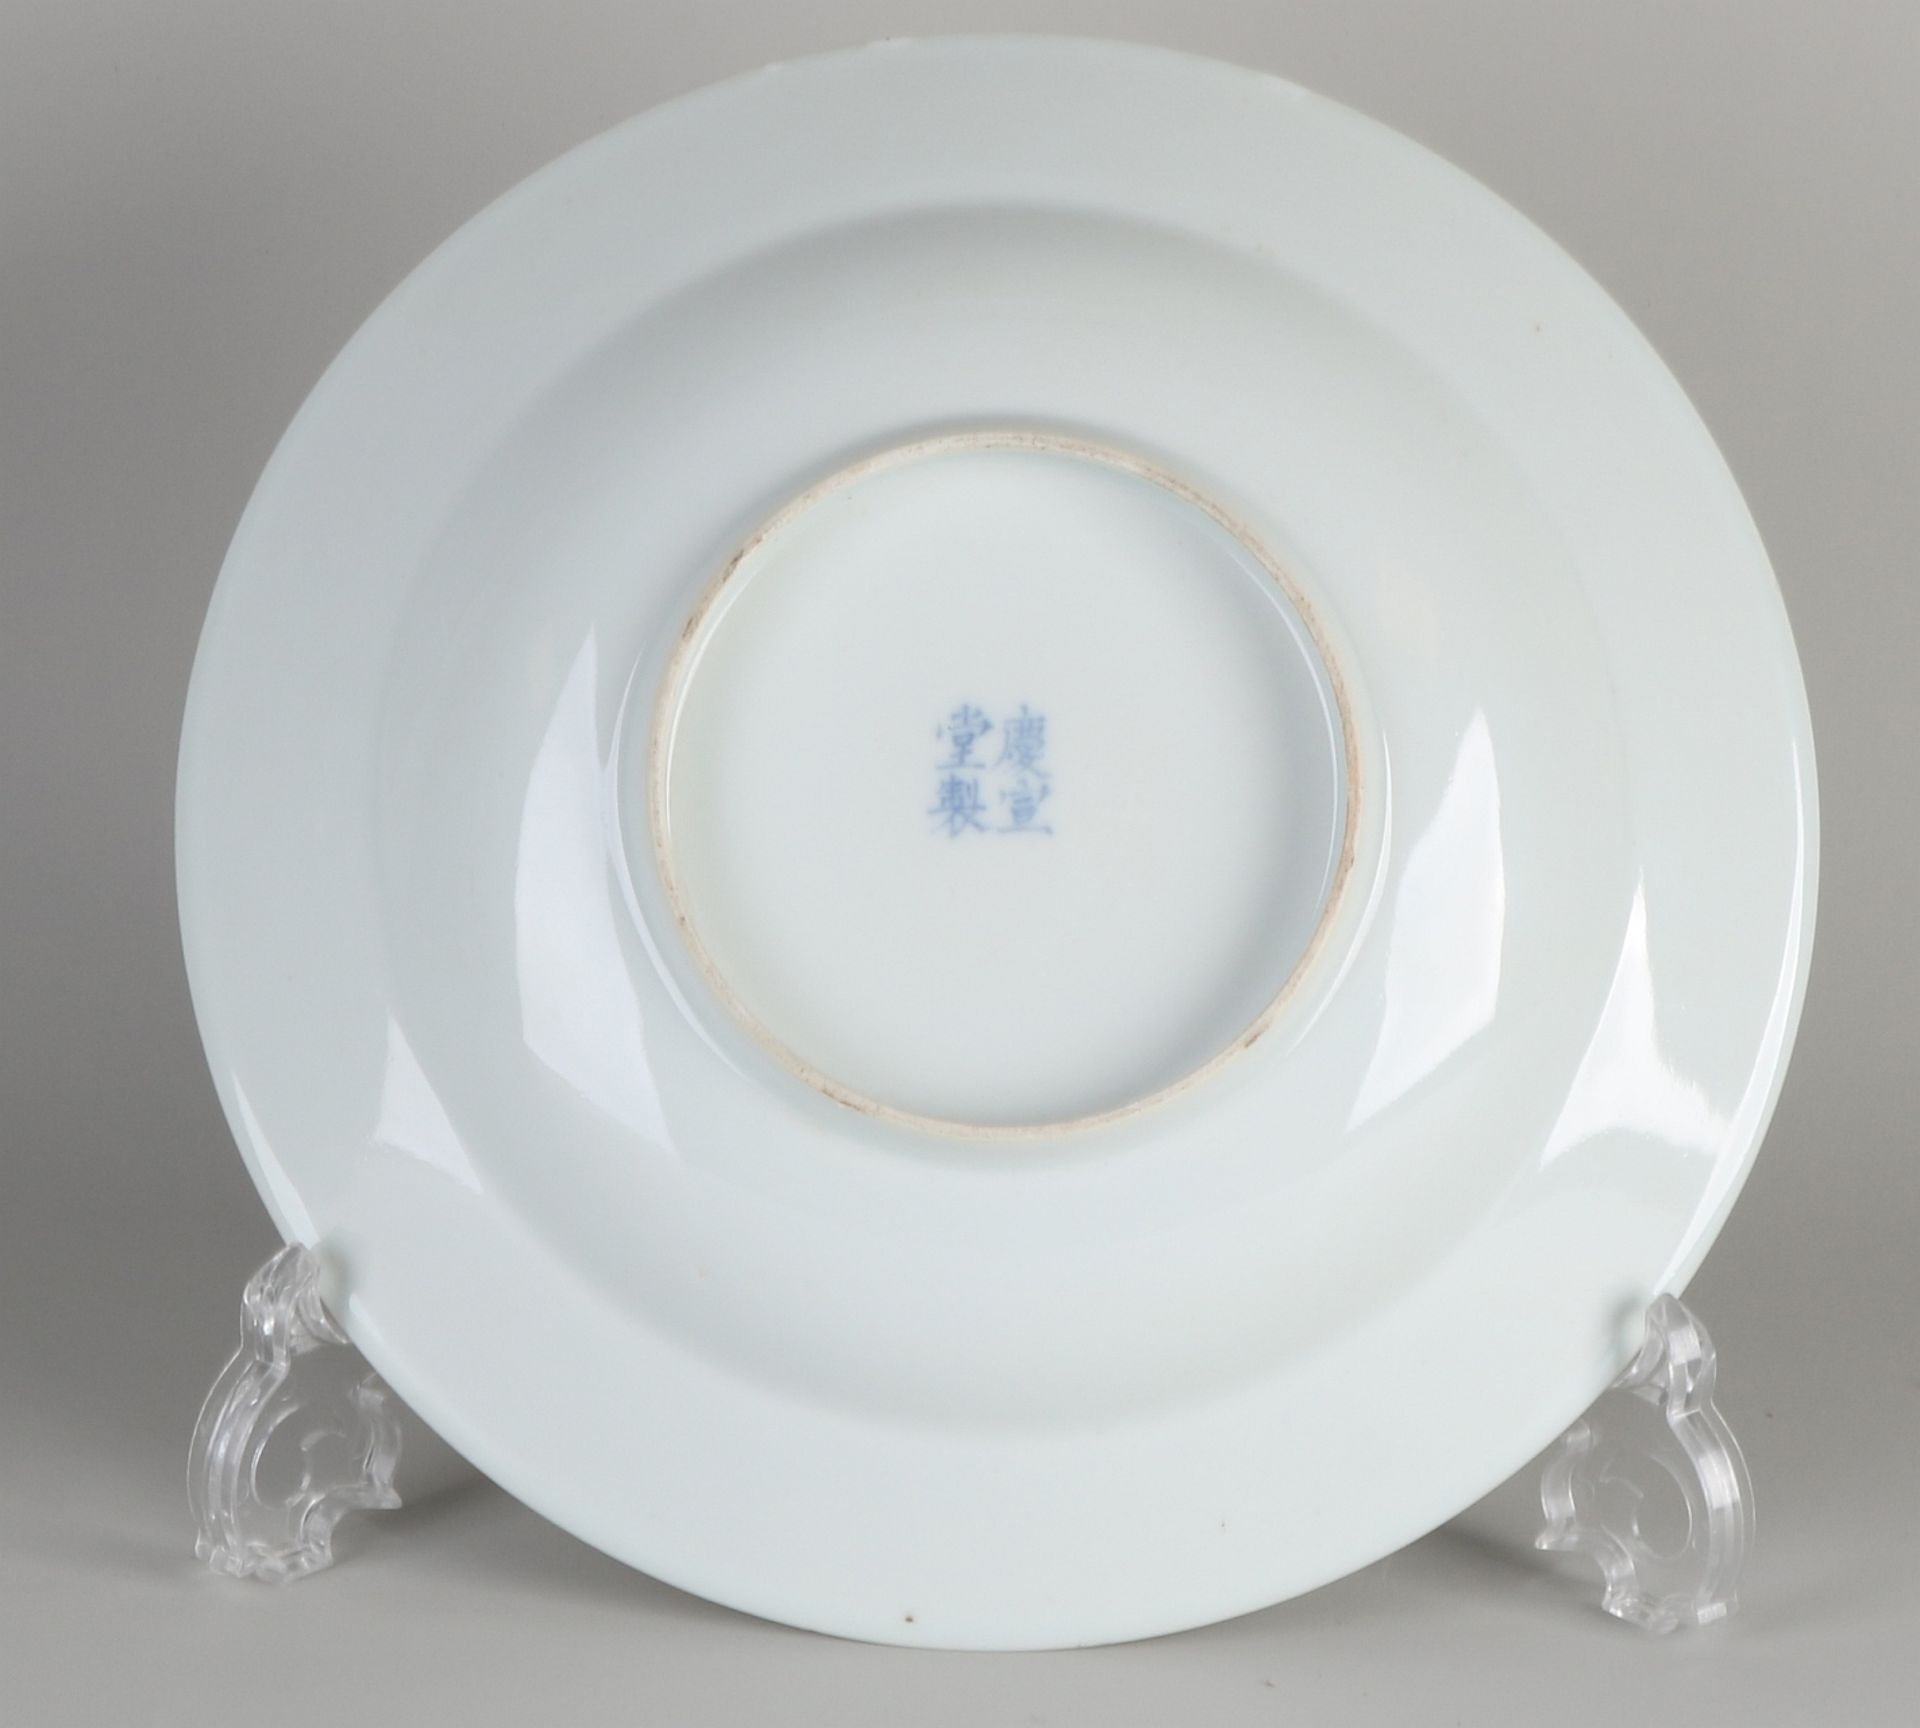 Chinesische Porzellanschale mit Drachendekor + vierstelliger Bodenmarke. Größe: Ø 25 cm. In gu - Image 2 of 2